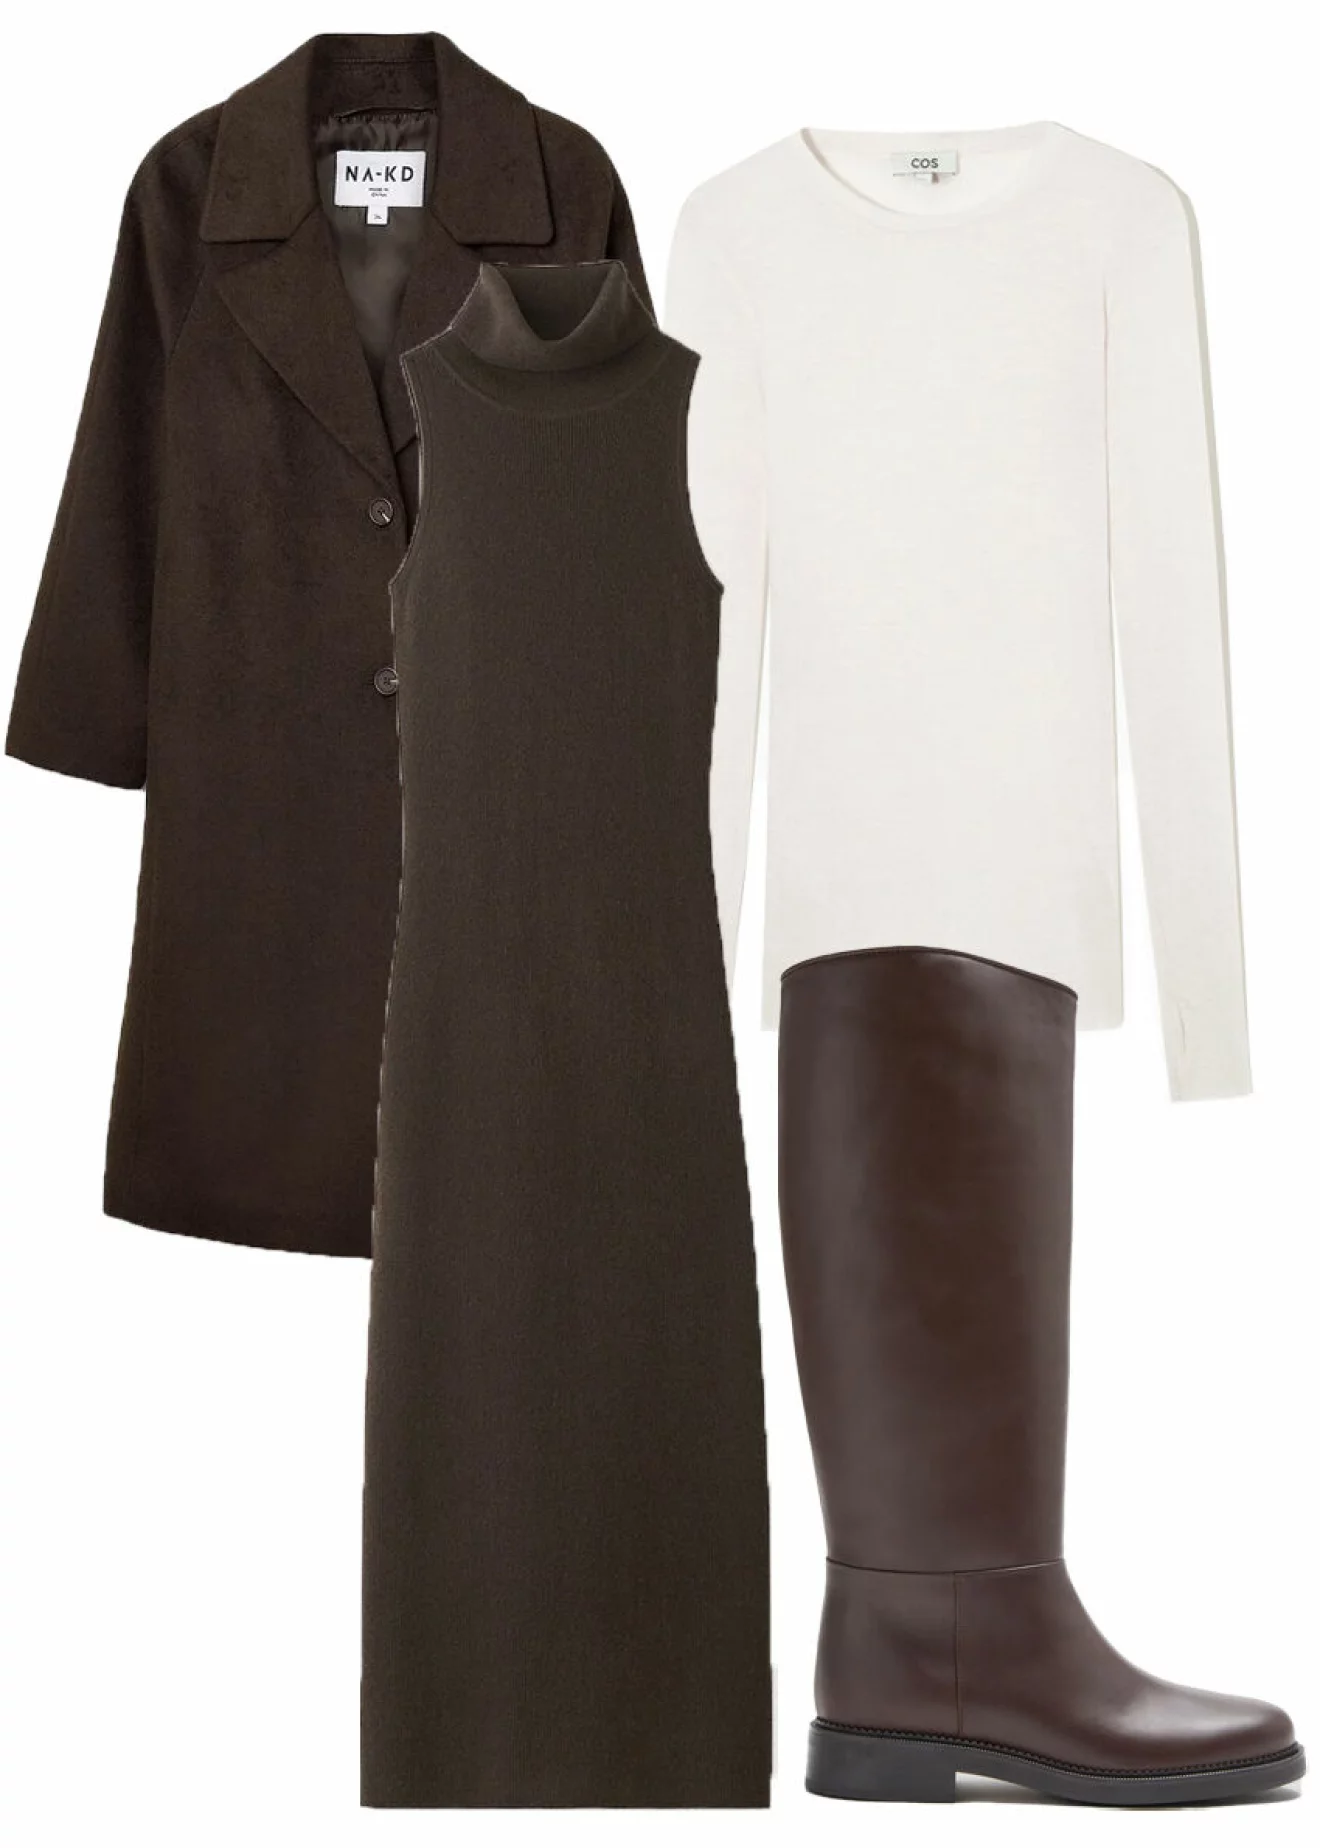 brun kappa, brunklänning, vita tröja och bruna boots.